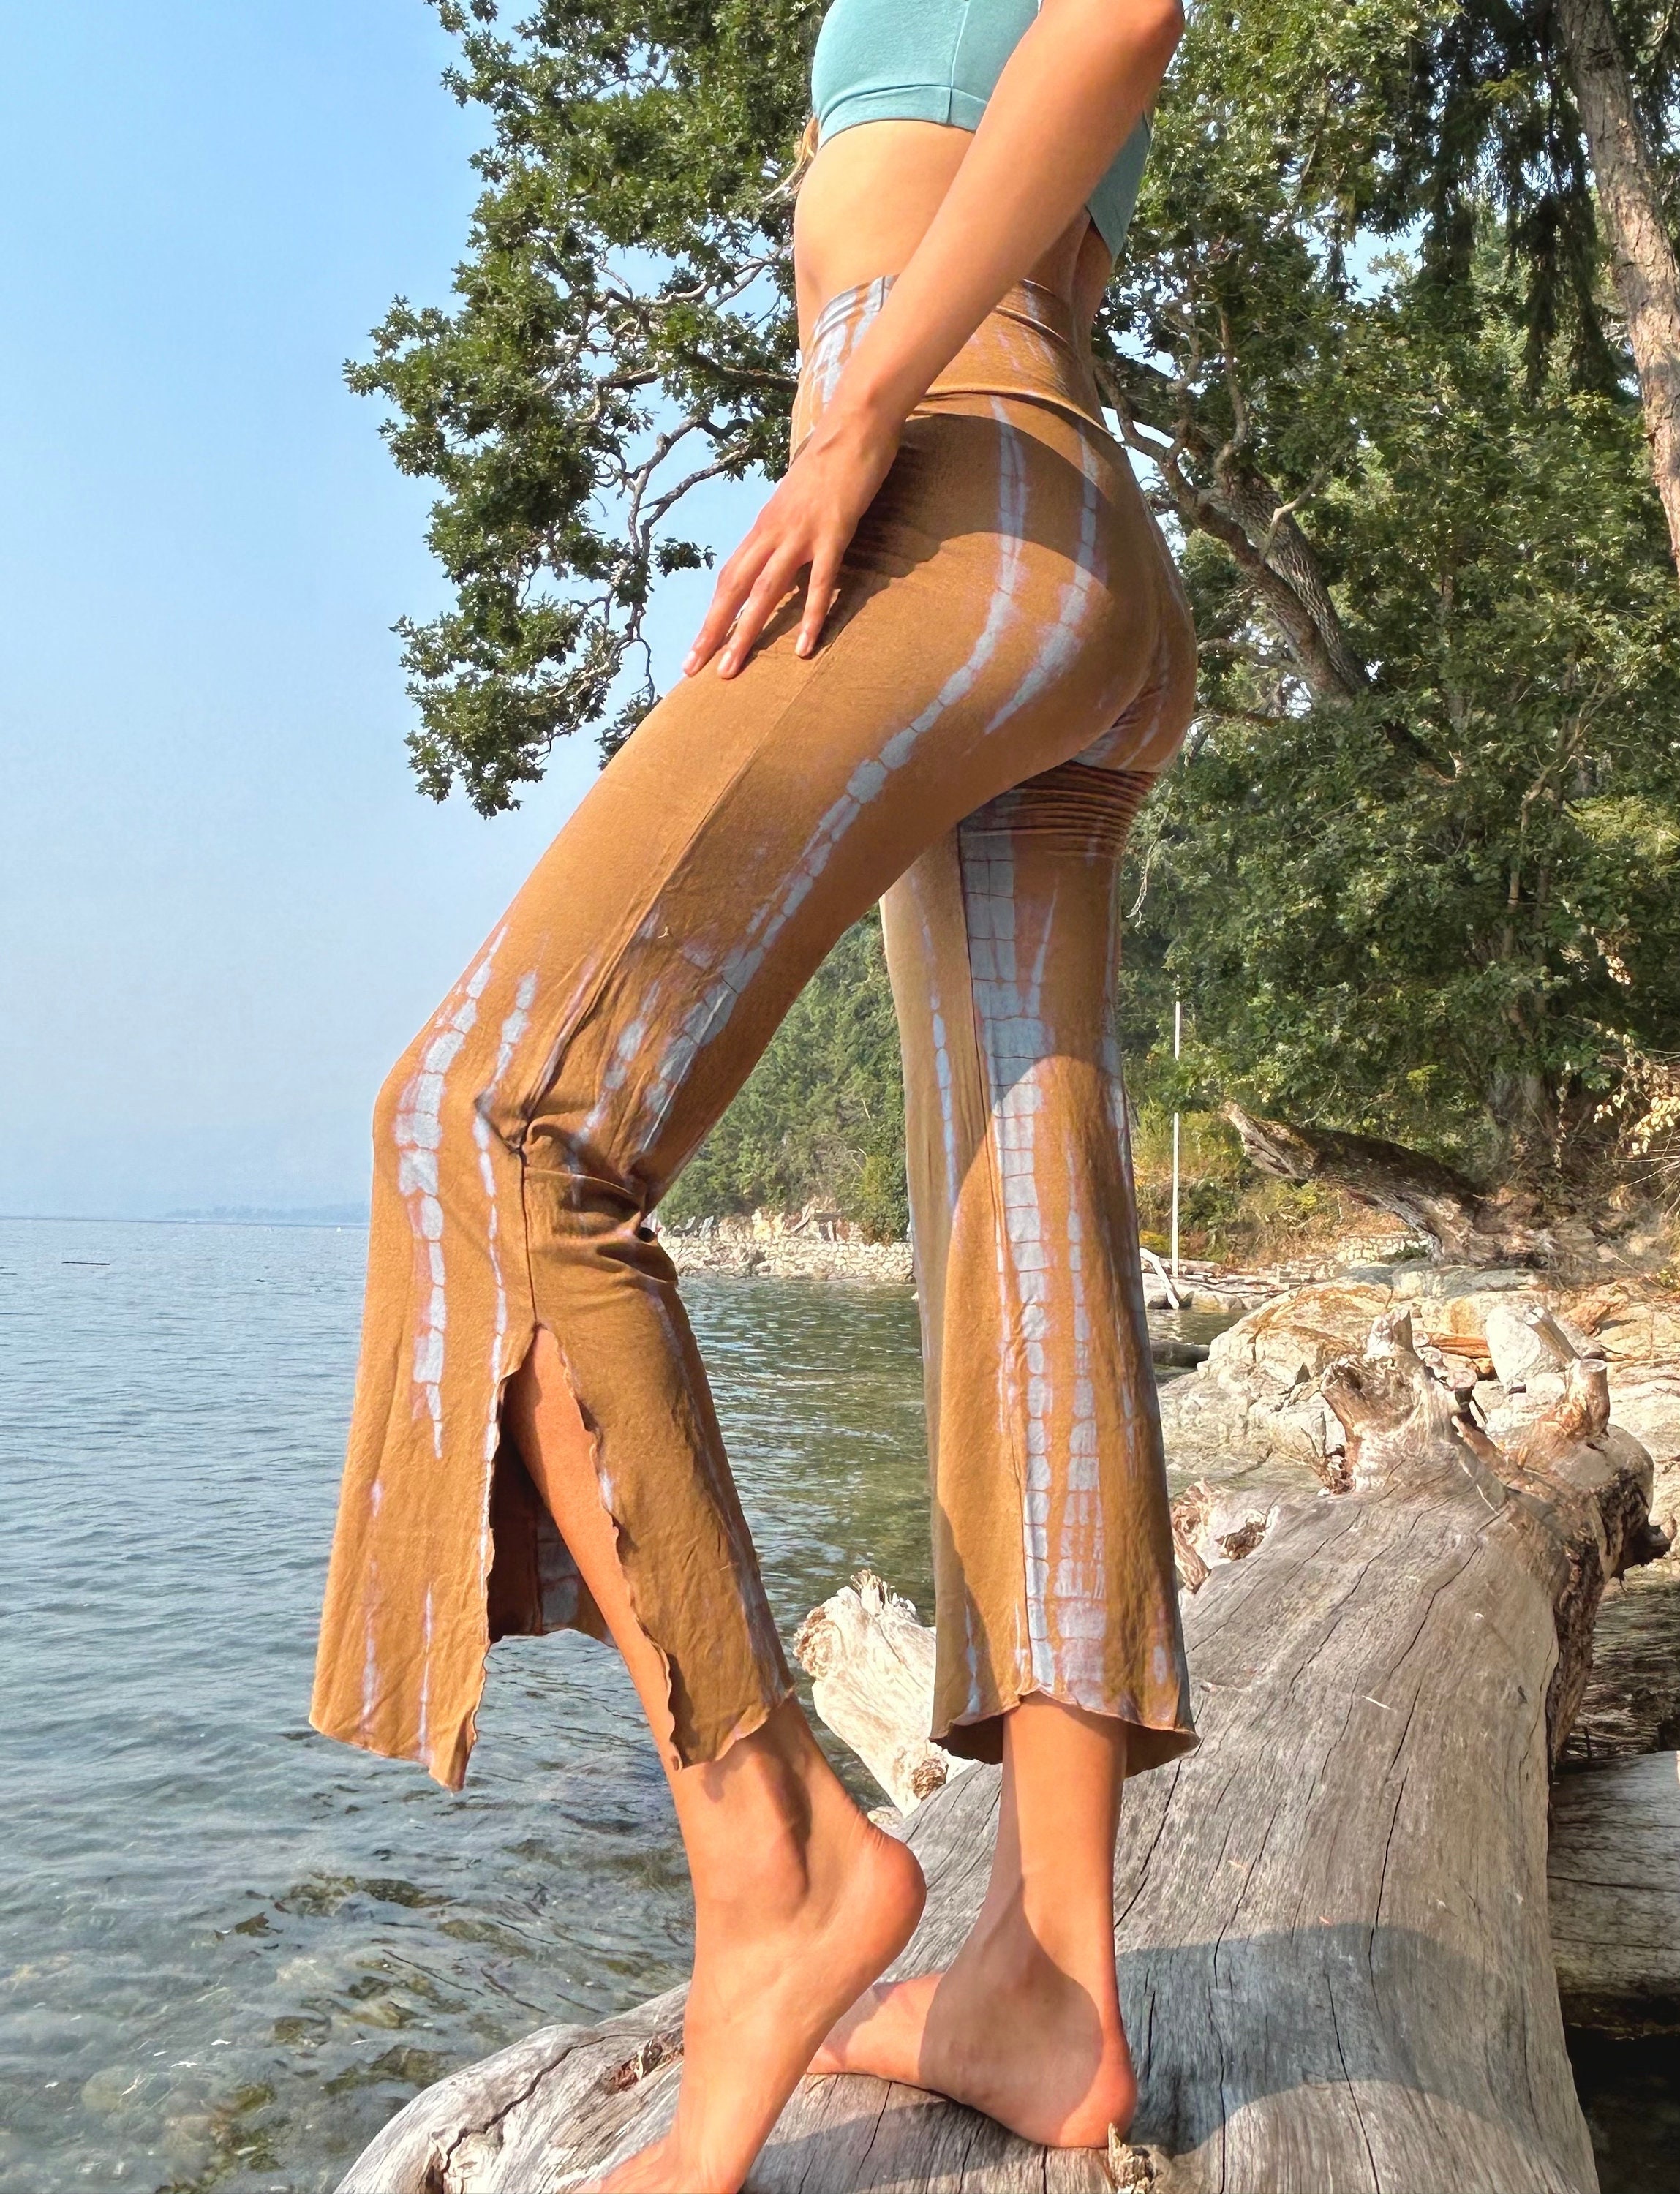 Yellow Yoga Pants -  Canada